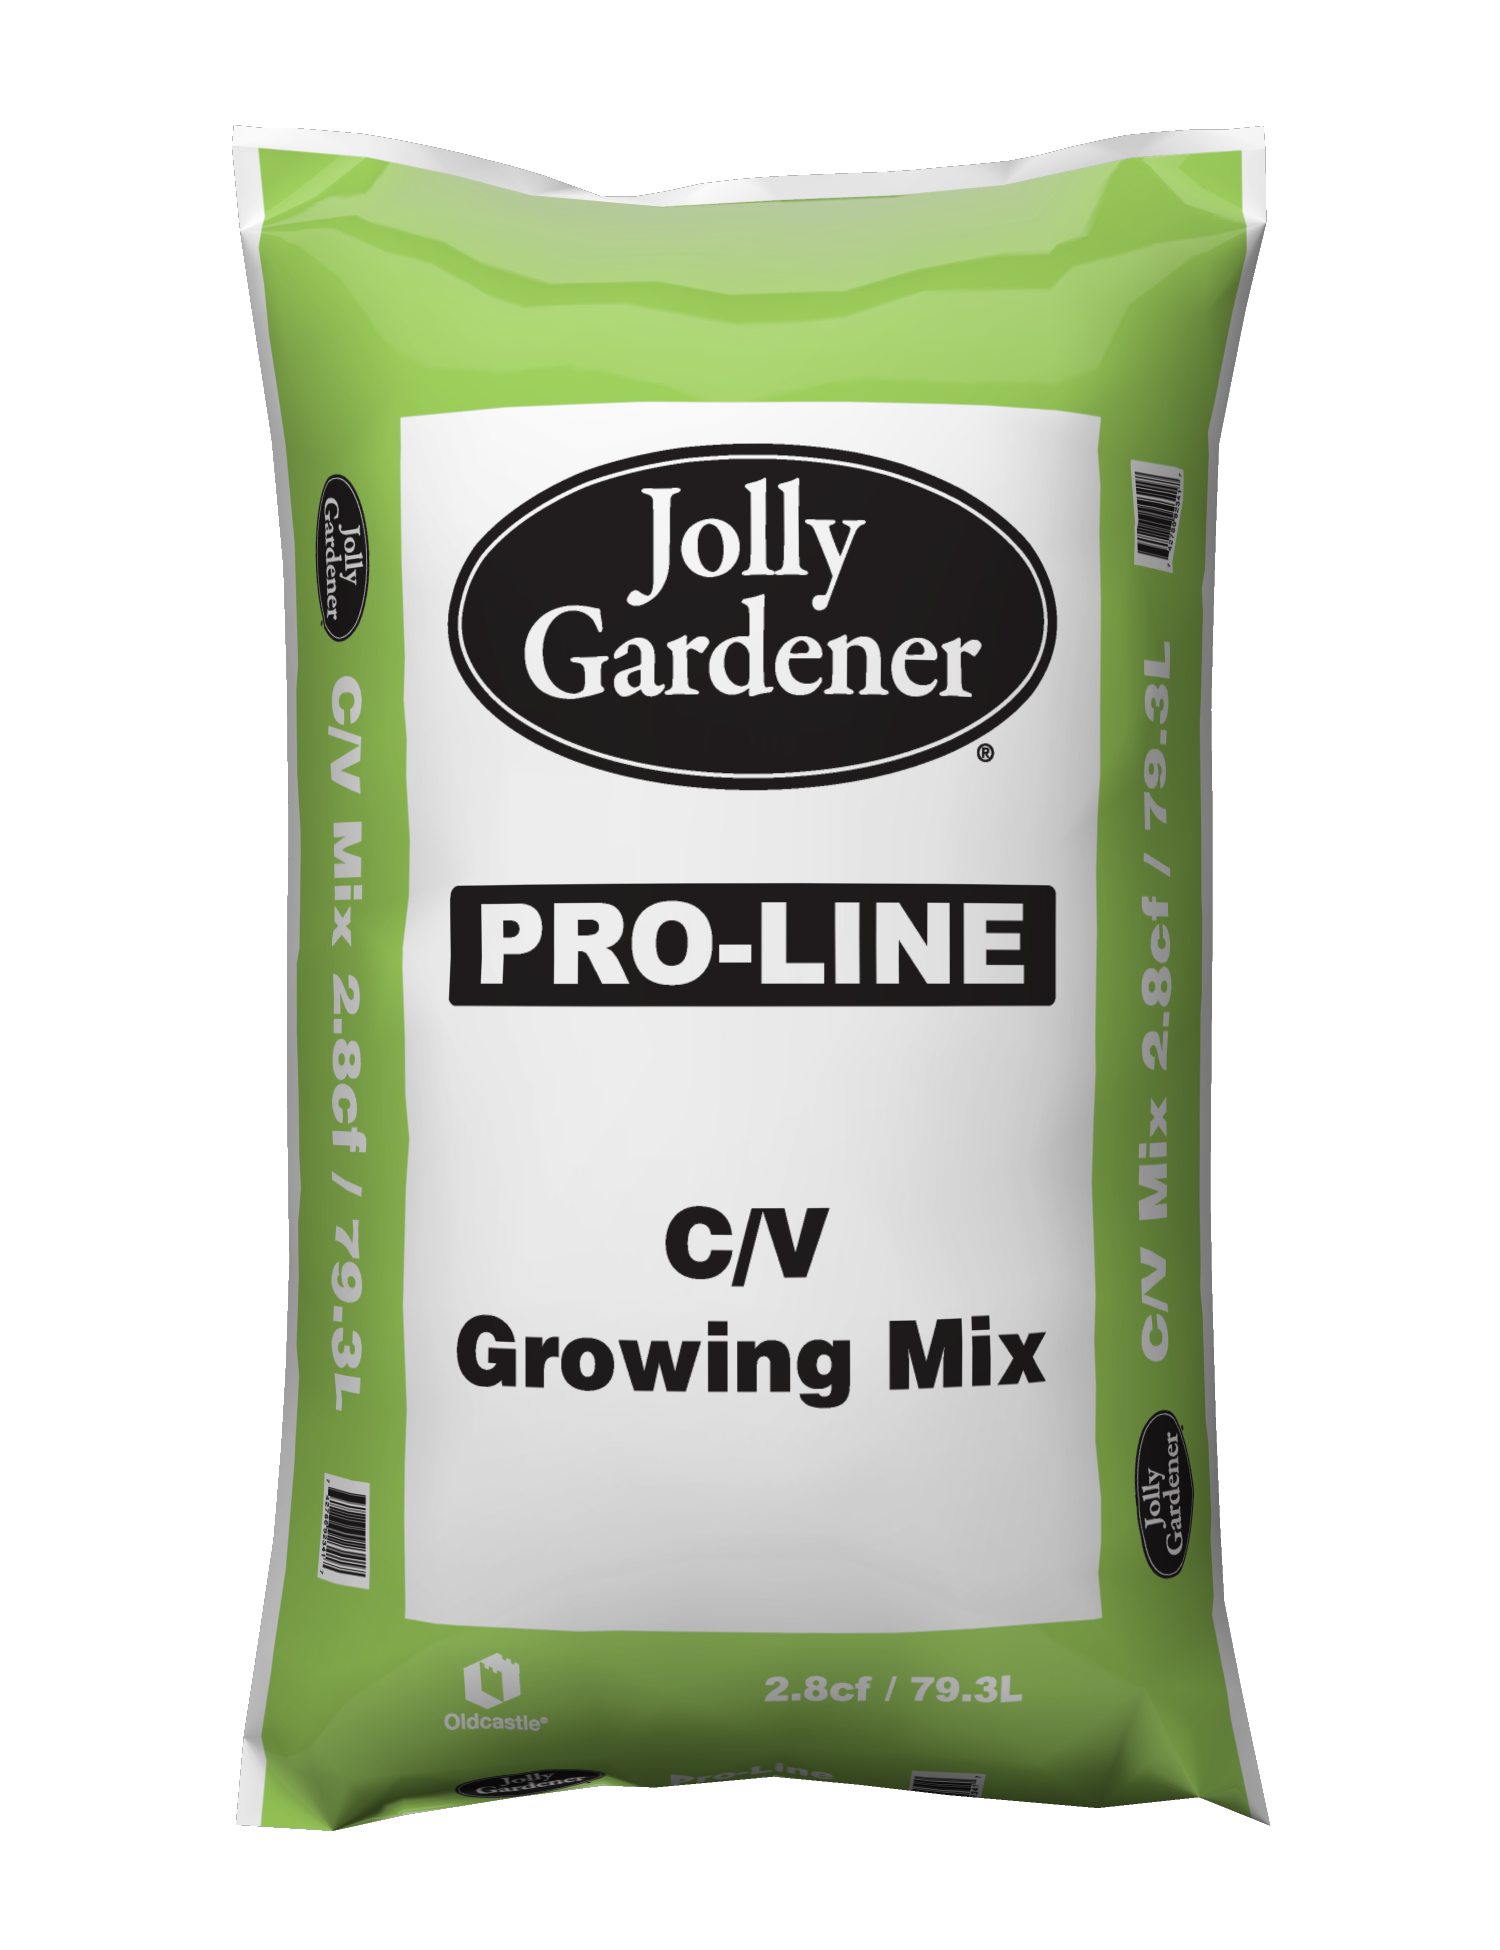 Jolly Gardener Pro Line C/V Mix 2.8 Cu. Ft. bag